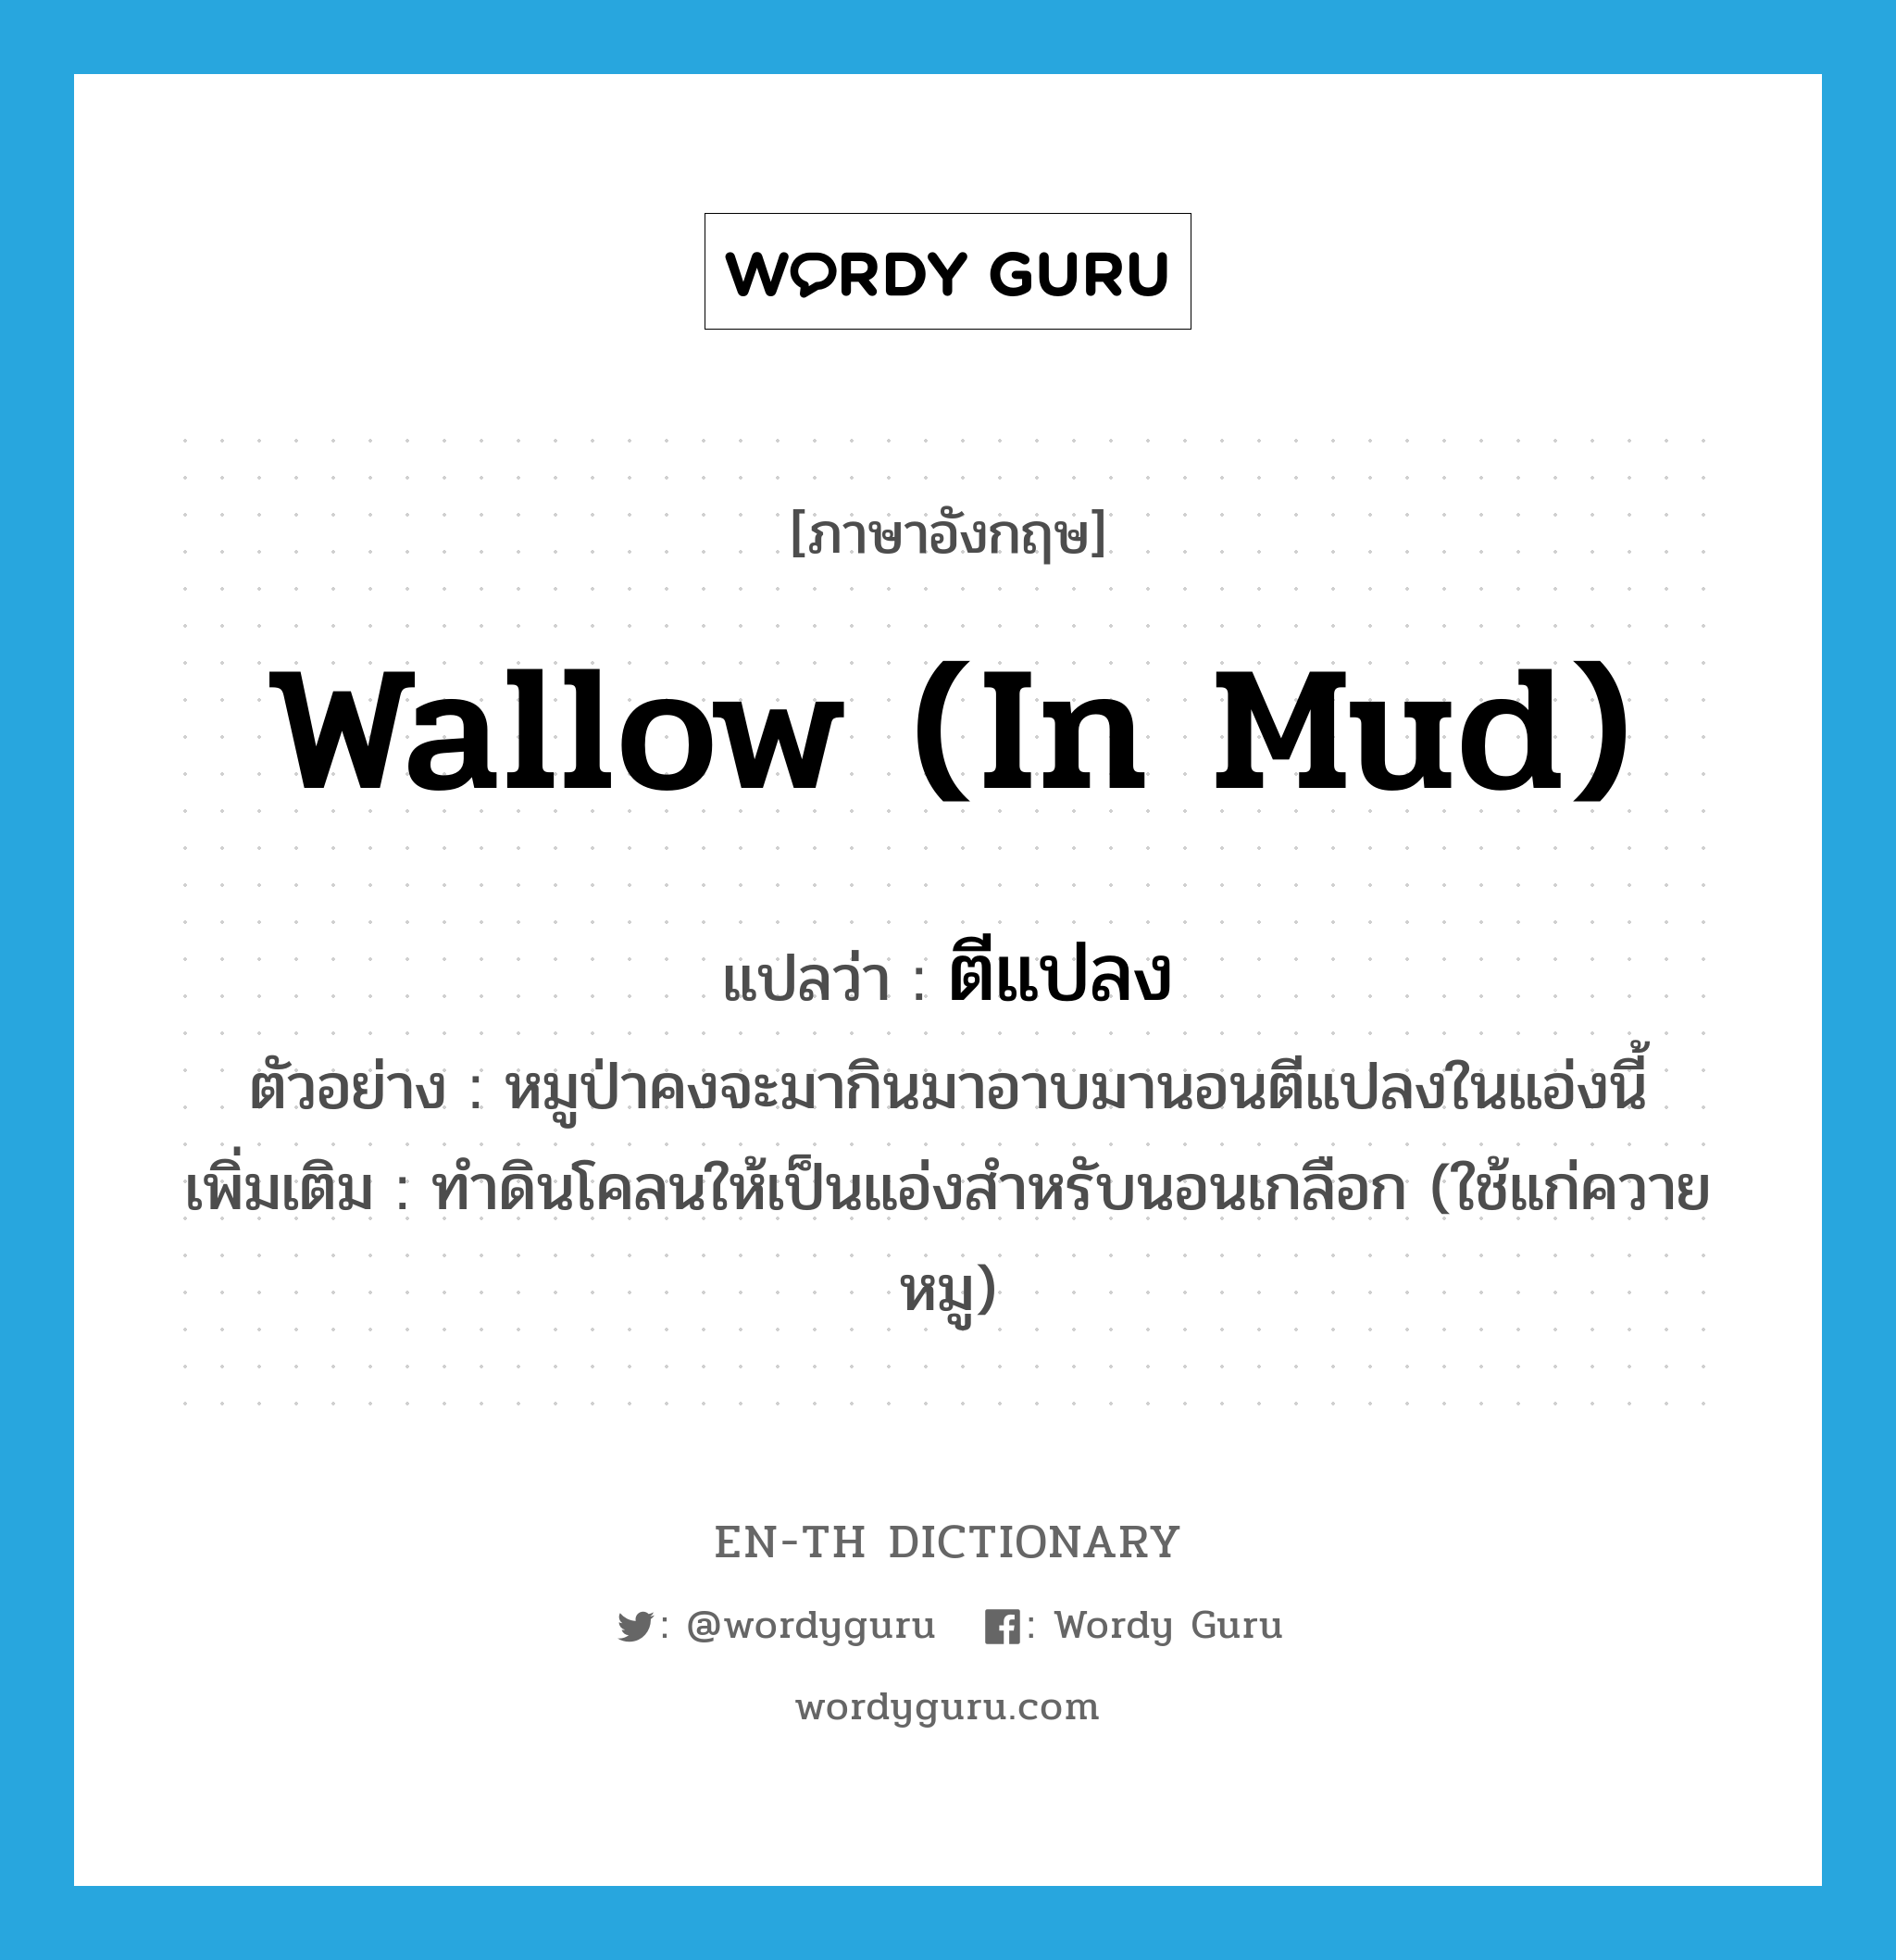 wallow (in mud) แปลว่า?, คำศัพท์ภาษาอังกฤษ wallow (in mud) แปลว่า ตีแปลง ประเภท V ตัวอย่าง หมูป่าคงจะมากินมาอาบมานอนตีแปลงในแอ่งนี้ เพิ่มเติม ทำดินโคลนให้เป็นแอ่งสำหรับนอนเกลือก (ใช้แก่ควาย หมู) หมวด V